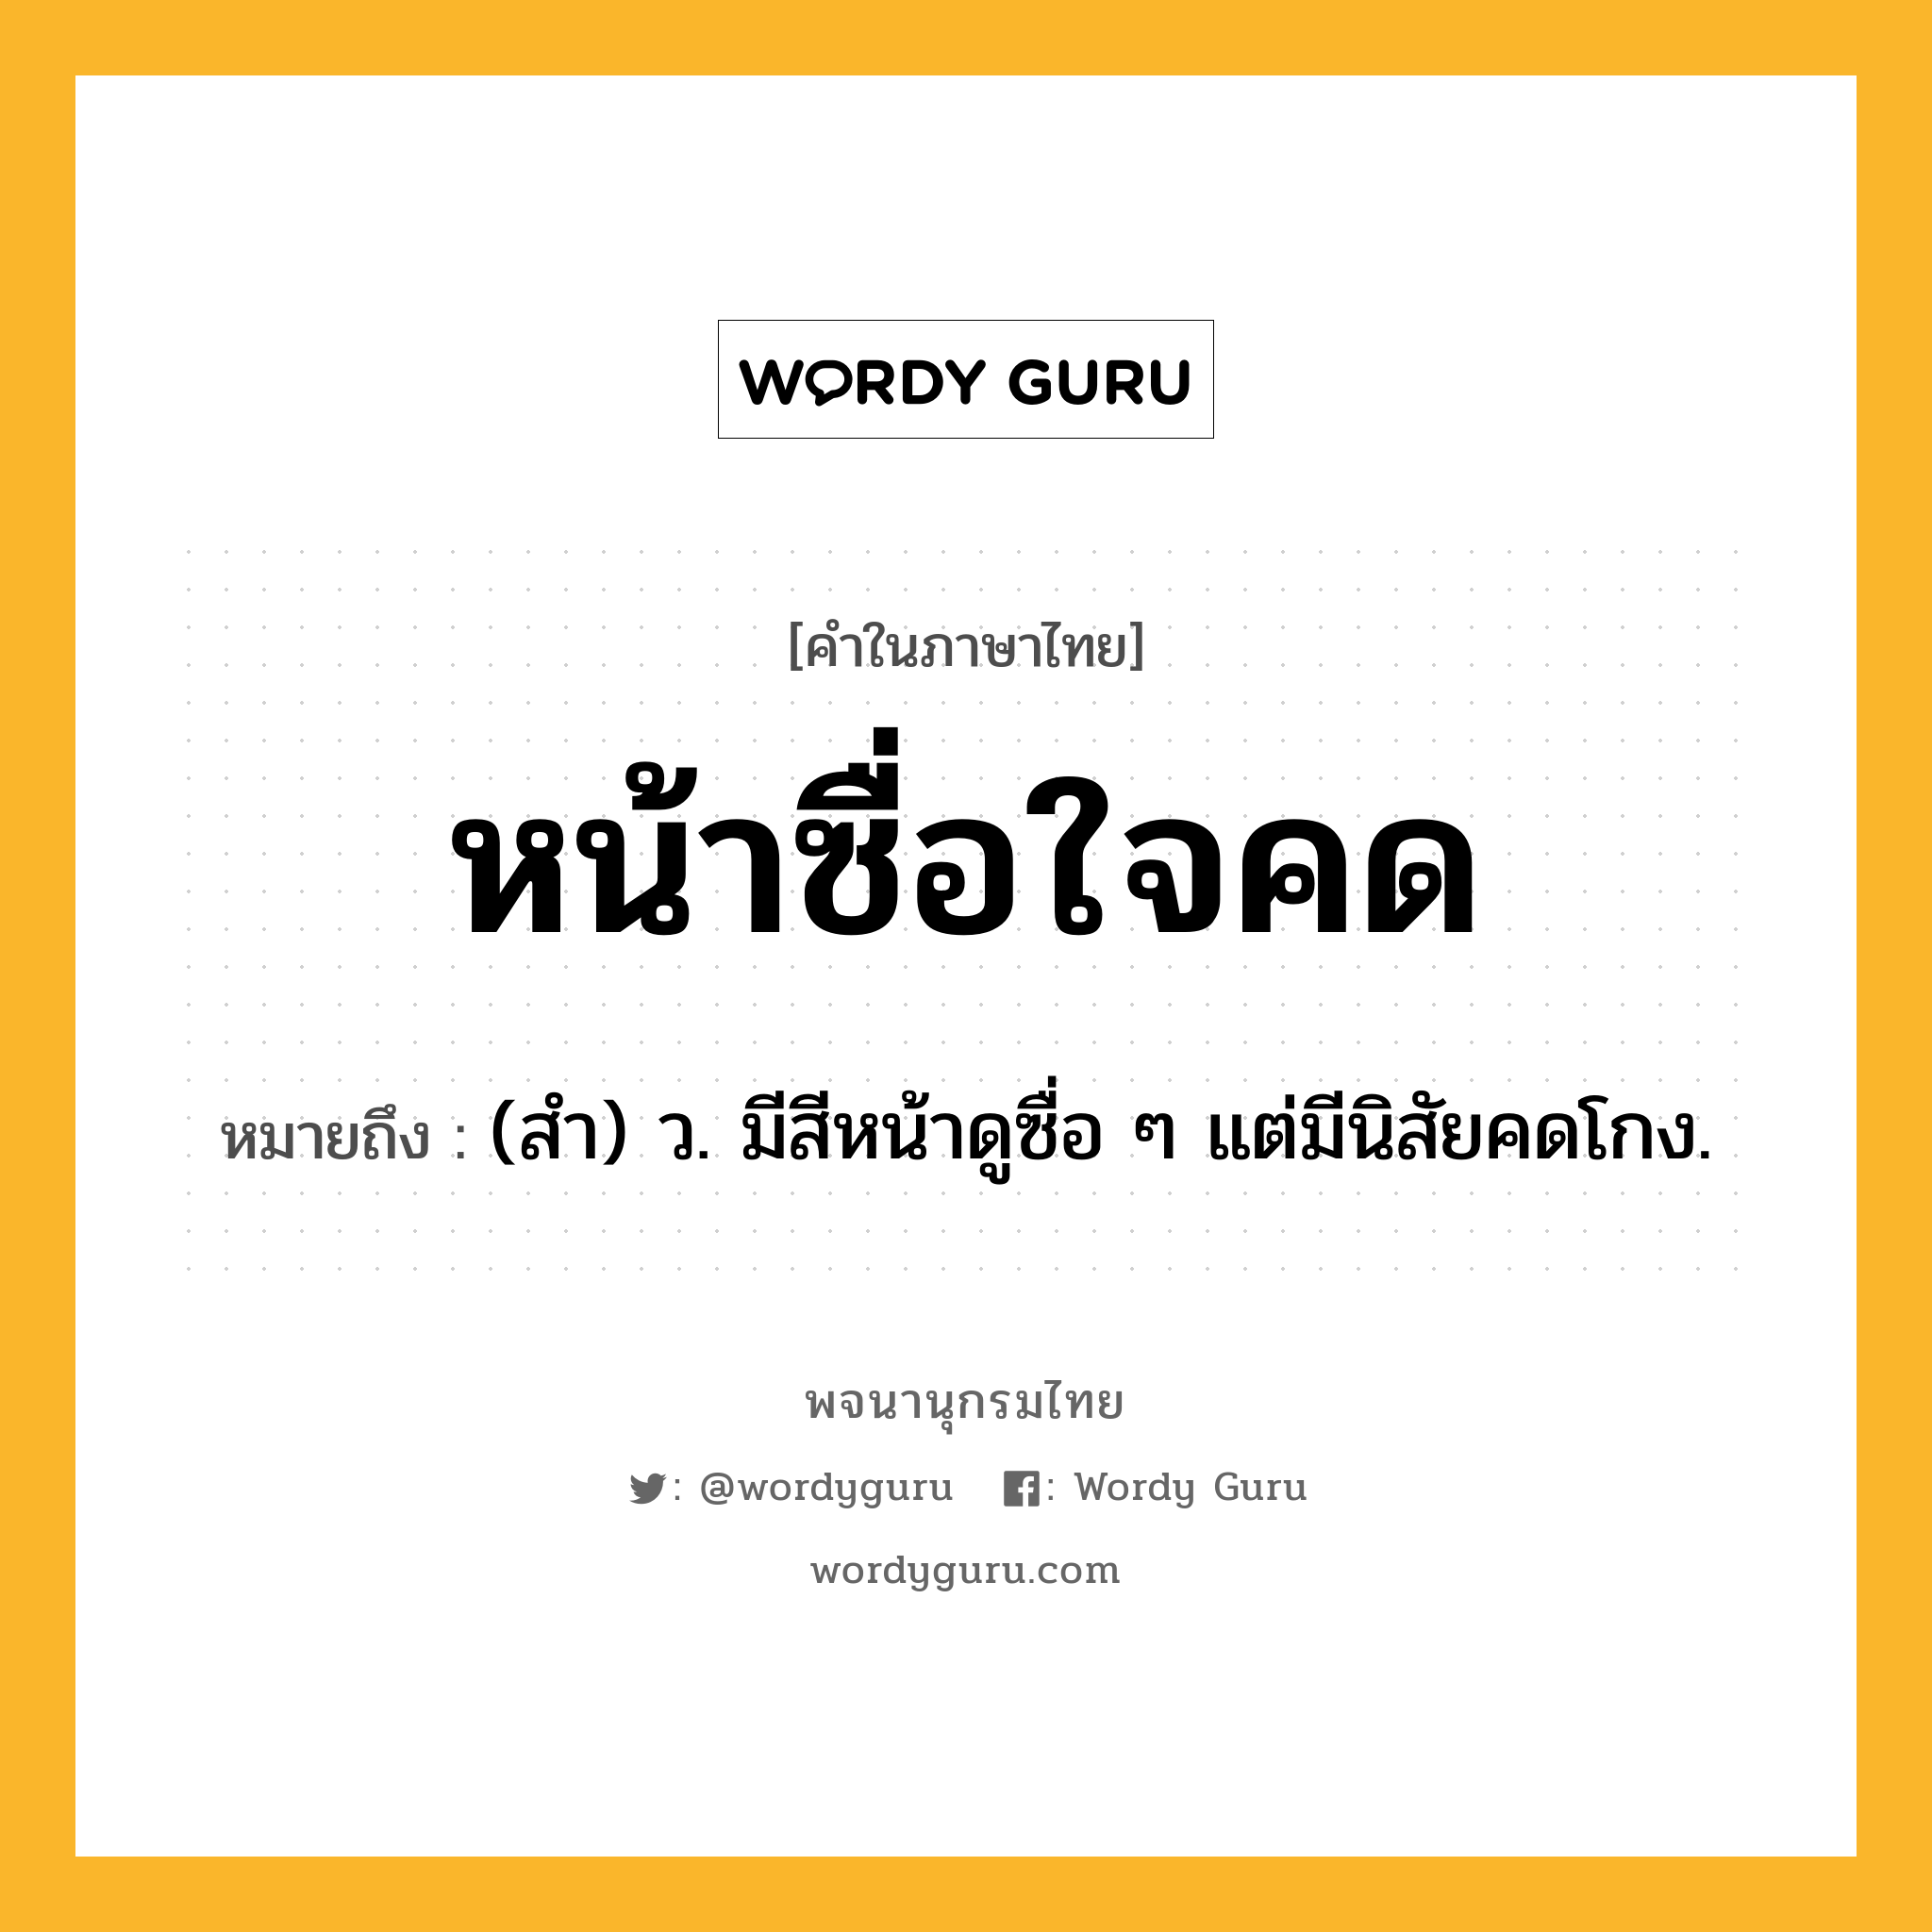 หน้าซื่อใจคด ความหมาย หมายถึงอะไร?, คำในภาษาไทย หน้าซื่อใจคด หมายถึง (สํา) ว. มีสีหน้าดูซื่อ ๆ แต่มีนิสัยคดโกง.